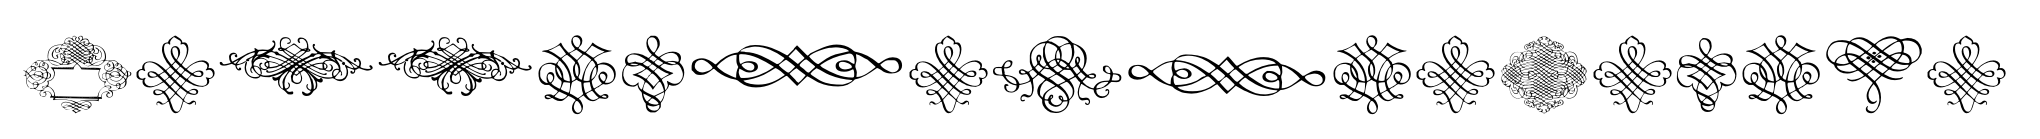 CalligraphiaLatina image